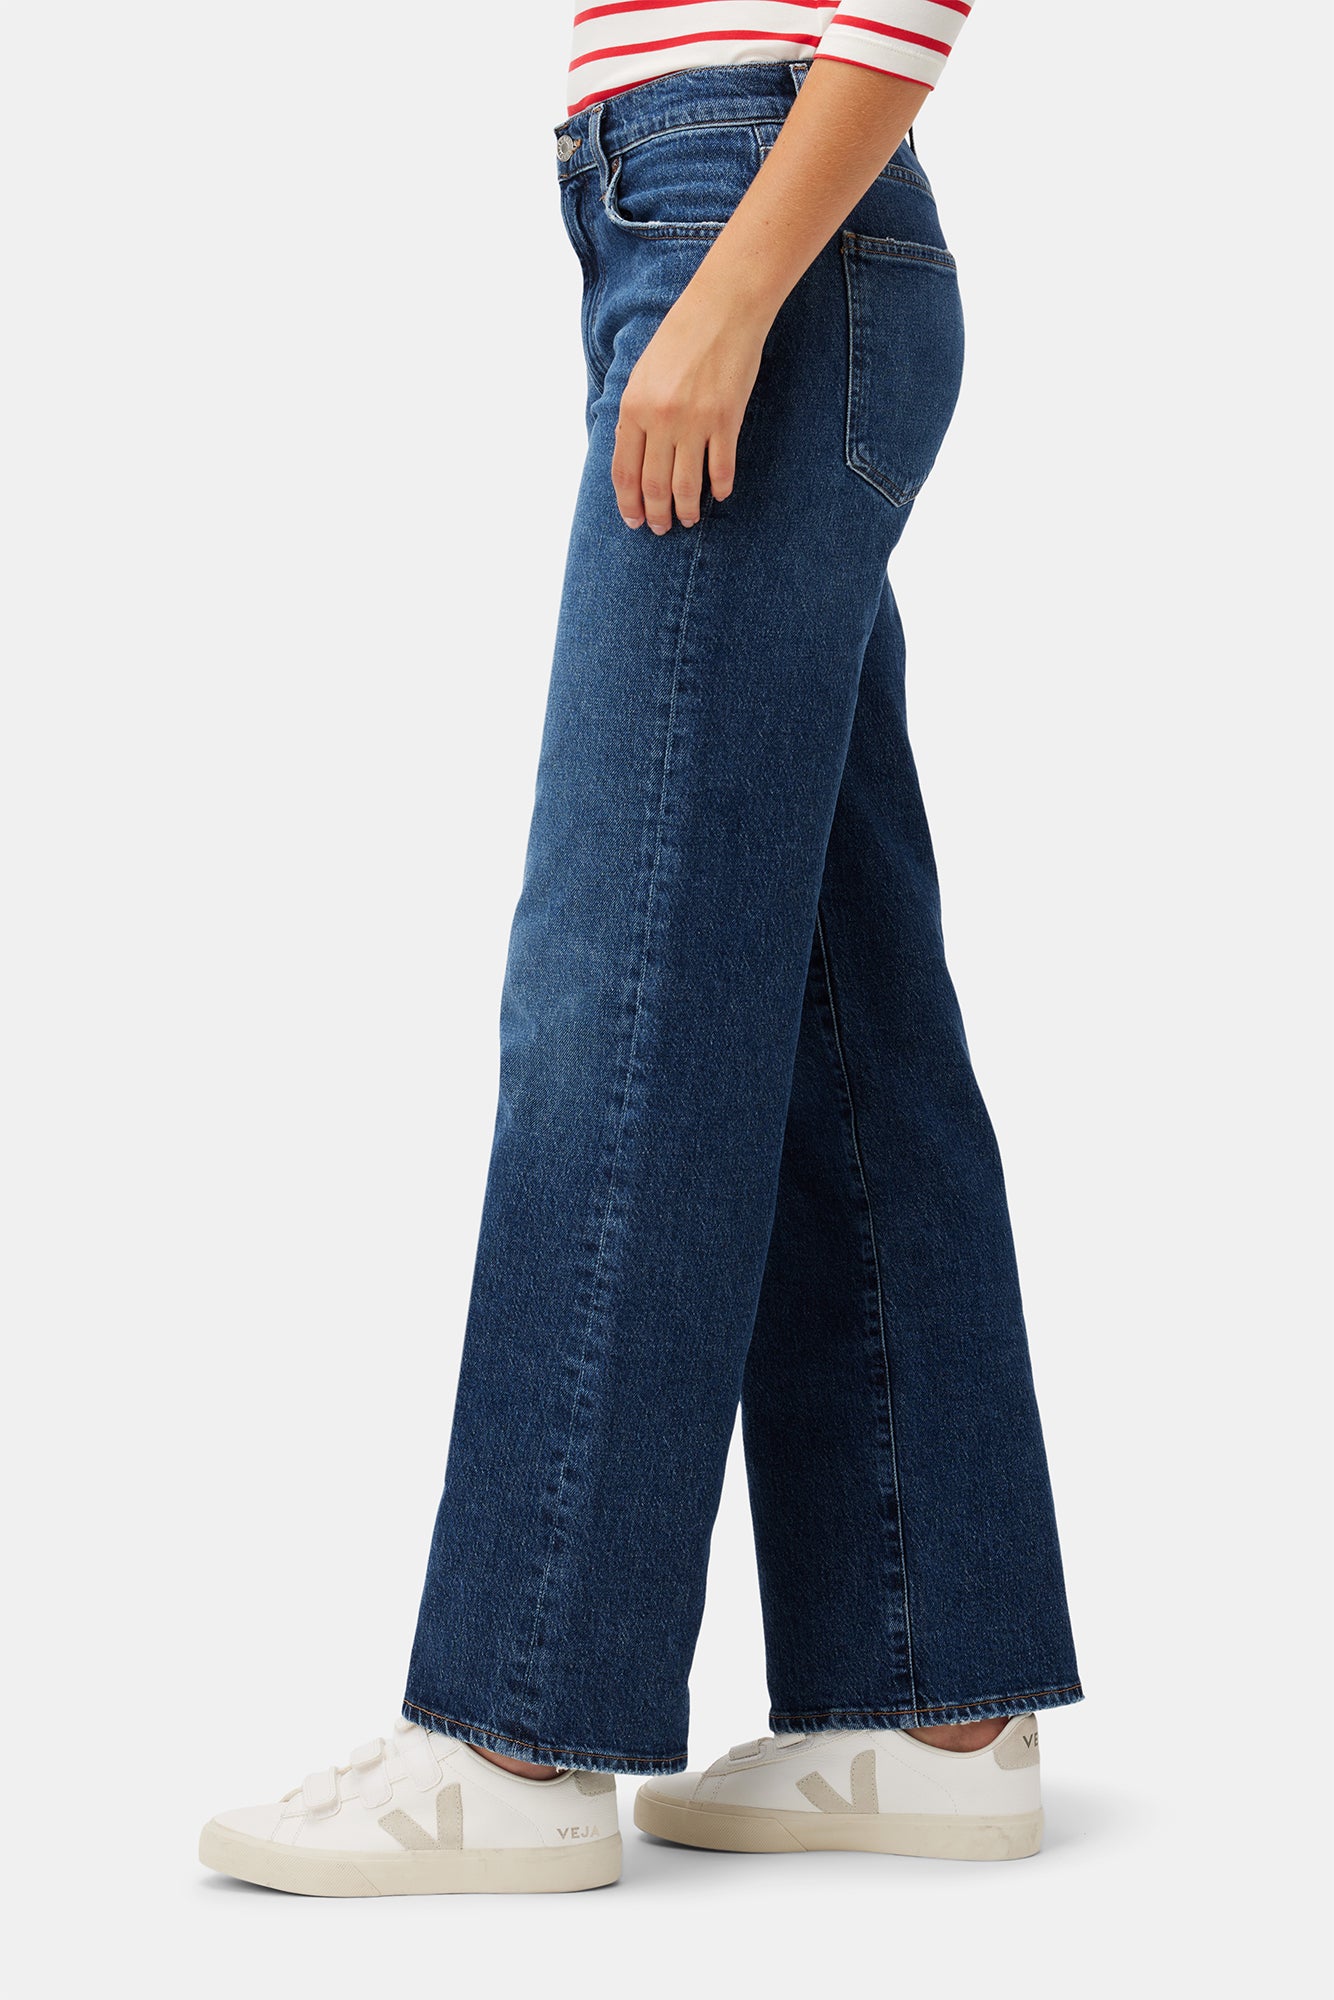 Women's Jeans Men's Jeans Star Embroidery Multi Pocket Jeans Men's